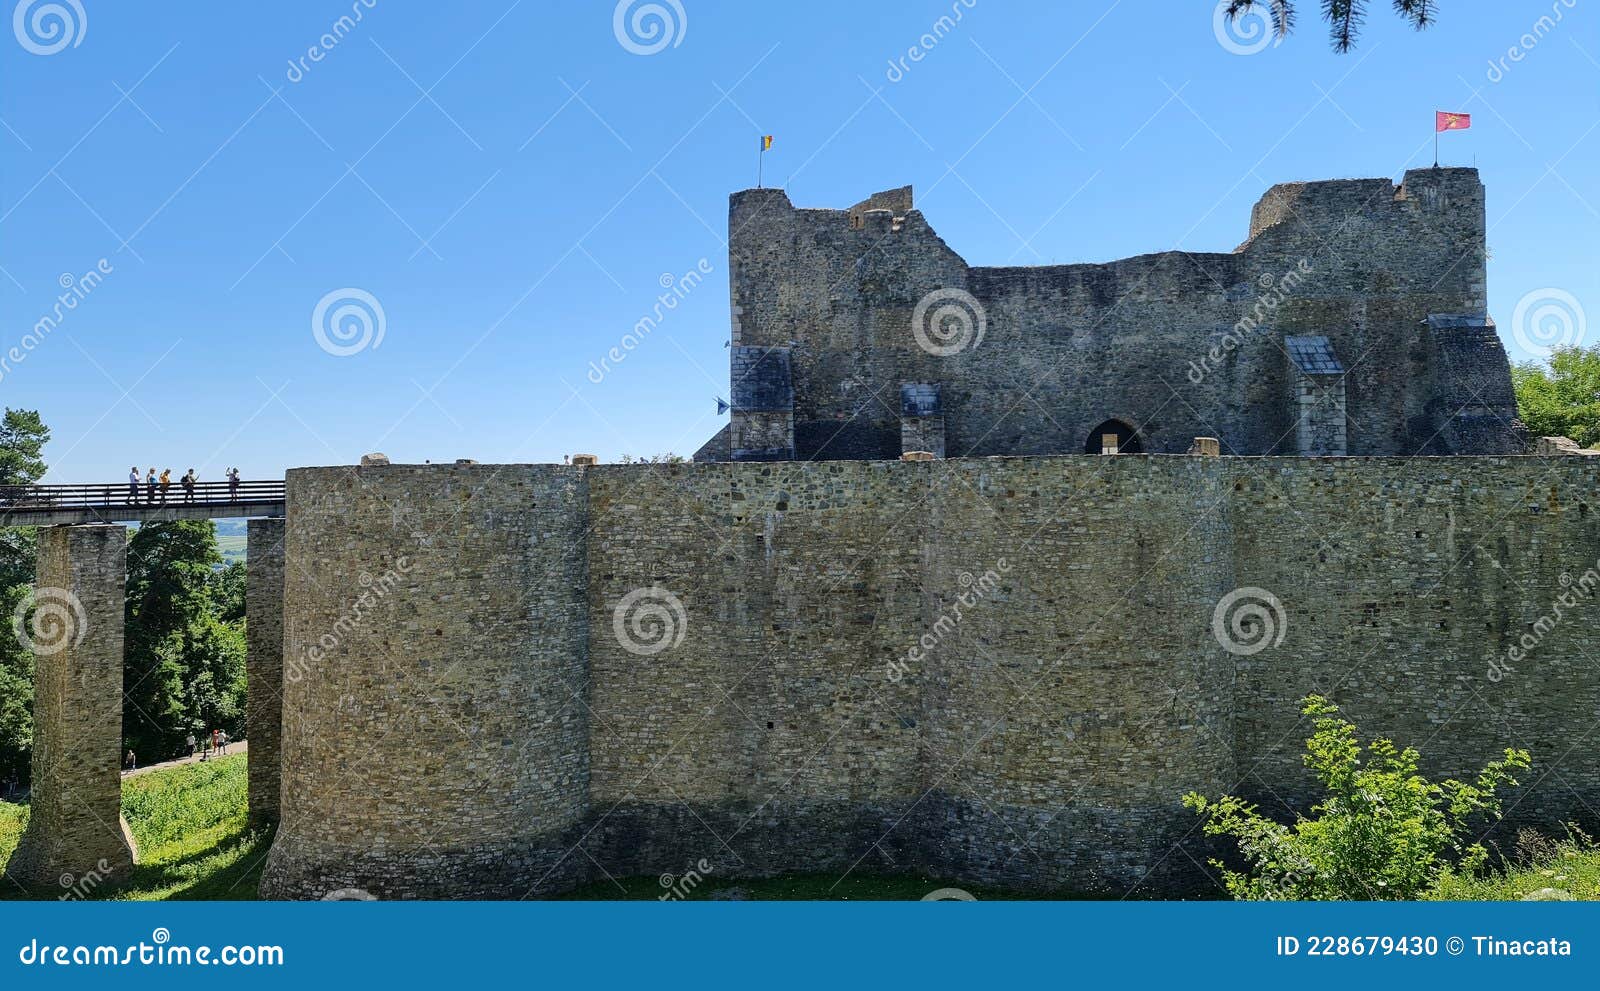 Cetatea Tighina Stock Photos - Free & Royalty-Free Stock Photos